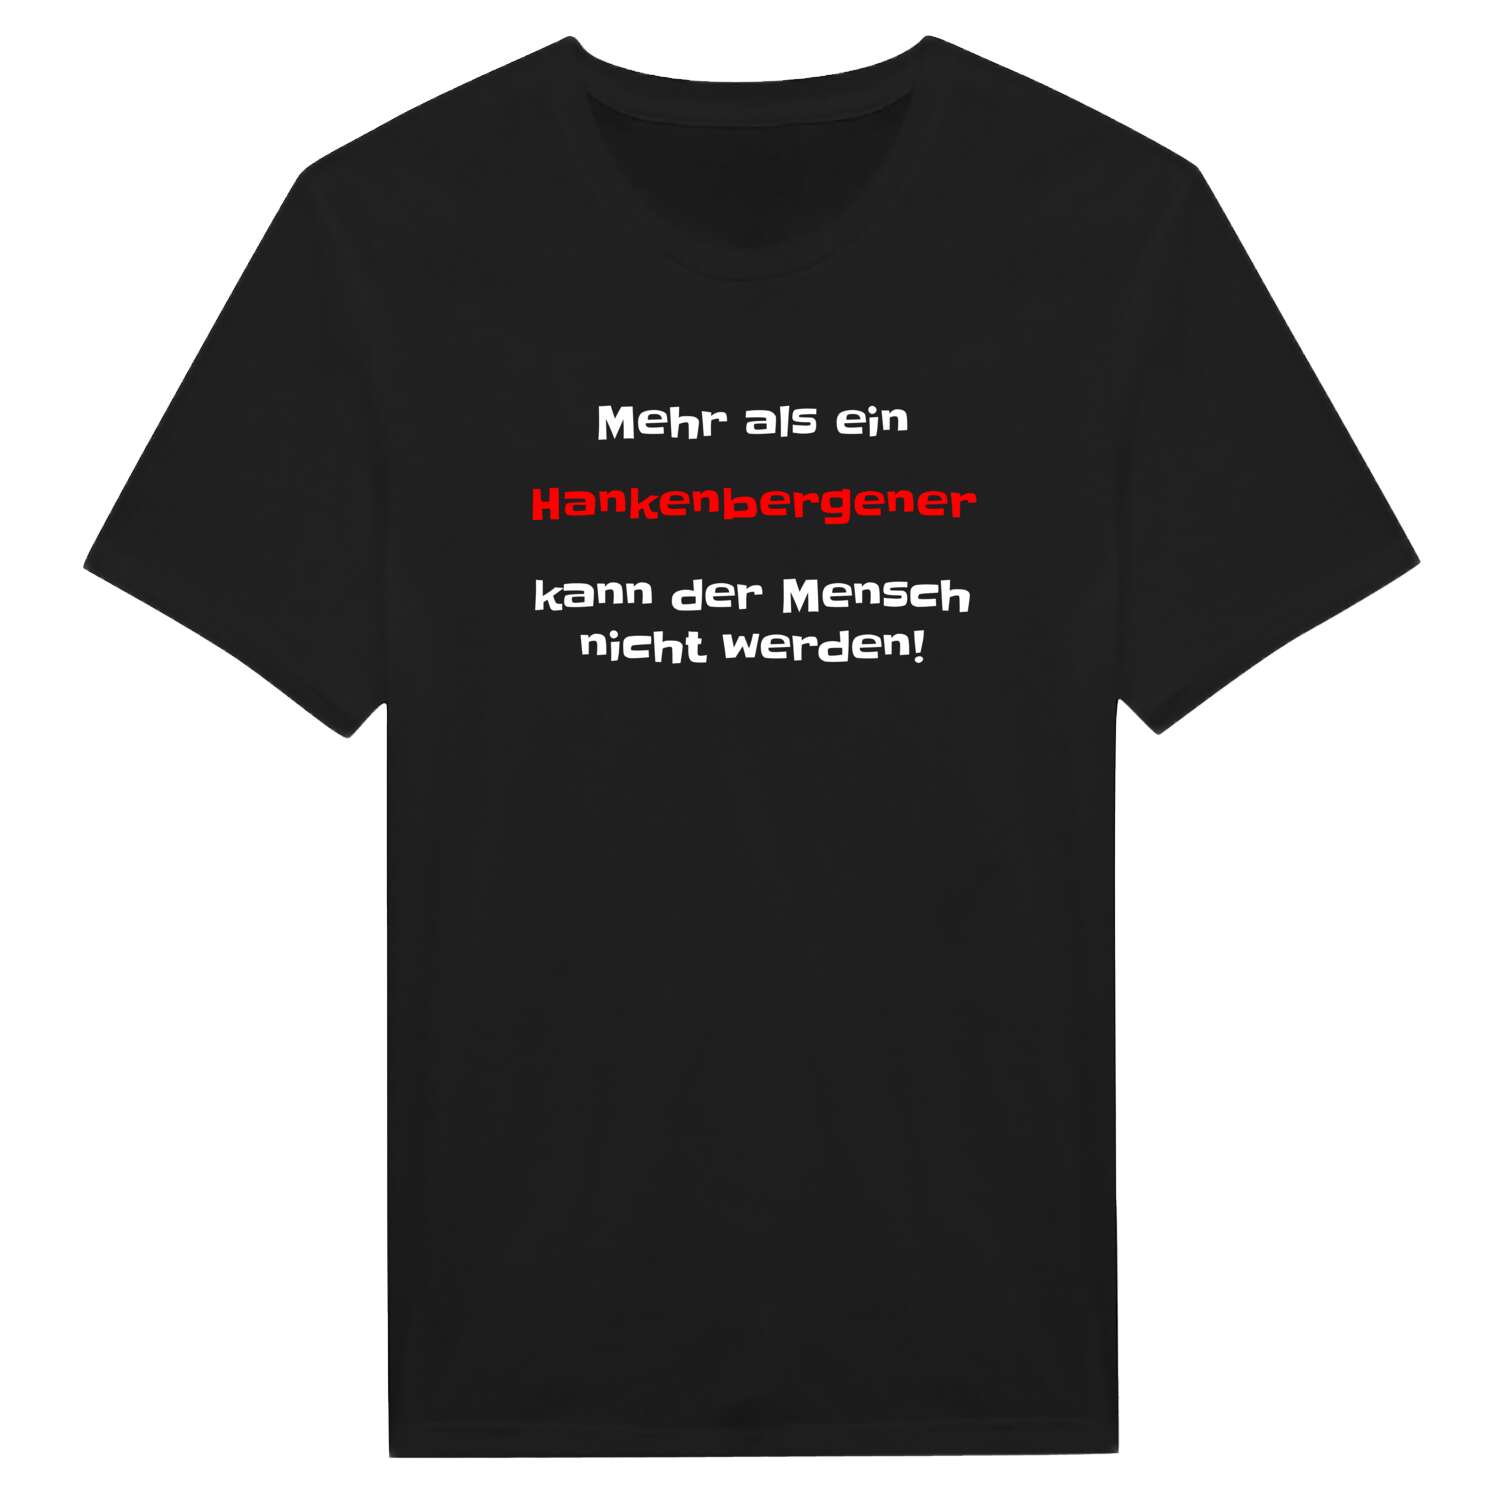 Hankenberge T-Shirt »Mehr als ein«